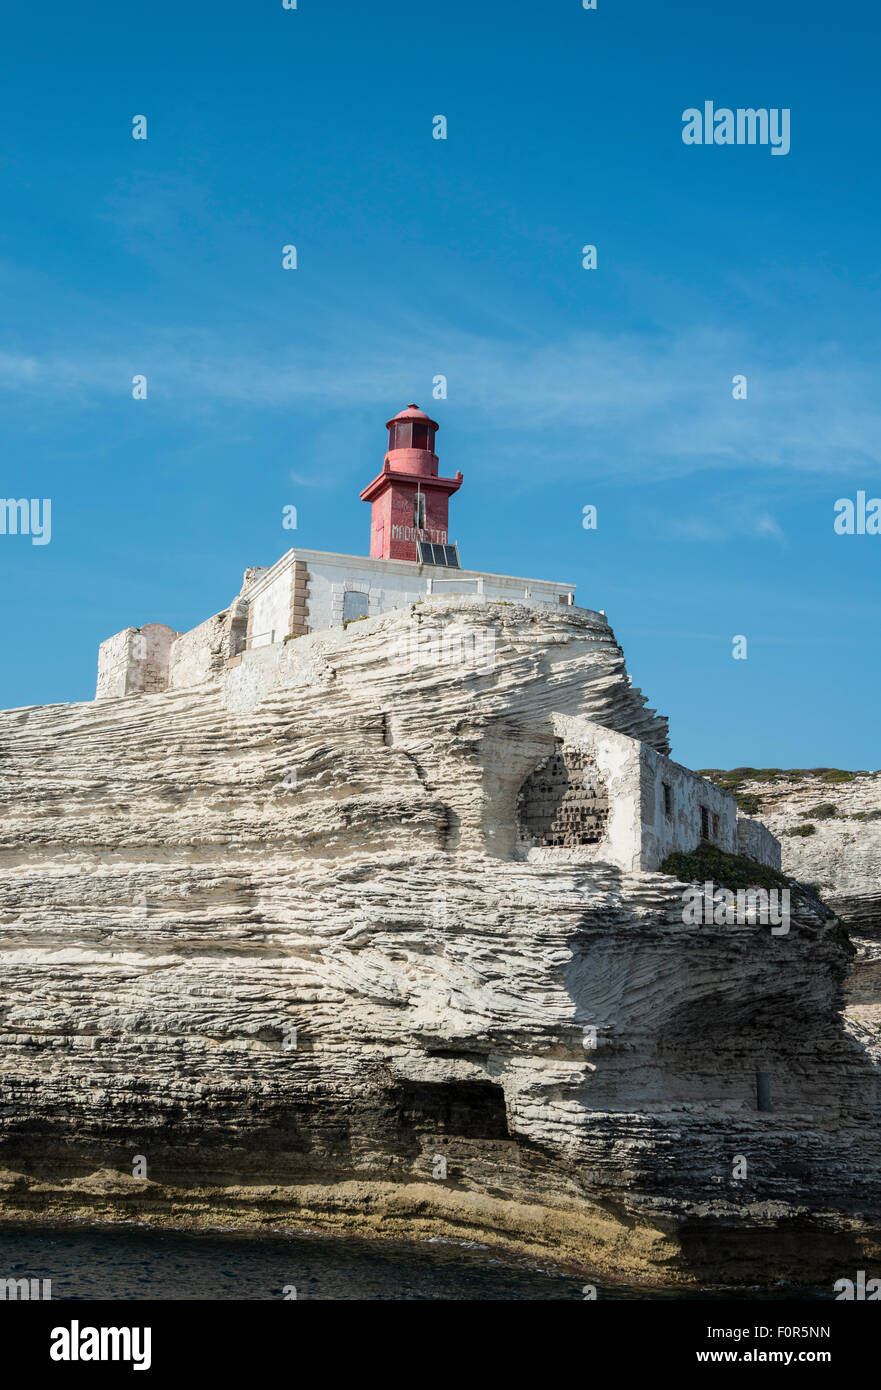 Phare sur falaise de craie, Bonifacio, Corse, France Banque D'Images